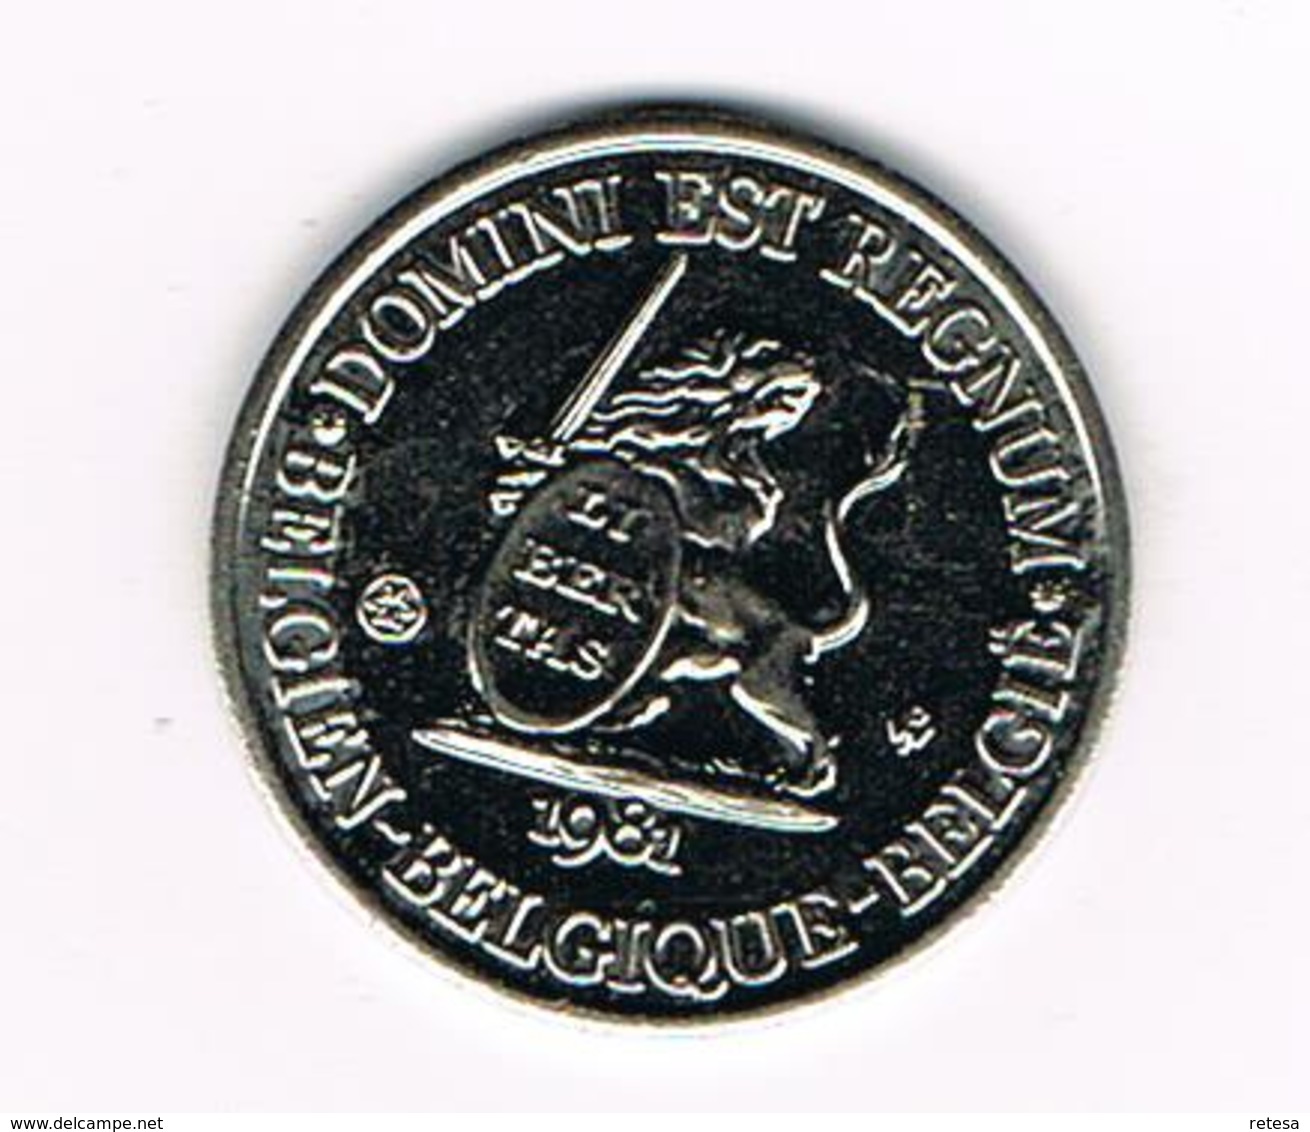 // PENNING  DOMINI EST REGNUM LIEGE REGNUM BELGICALE NEDERLAND BELGIUM ARUBA SURINAME MONUMENT  1981 - 3.000 EX. - Pièces écrasées (Elongated Coins)